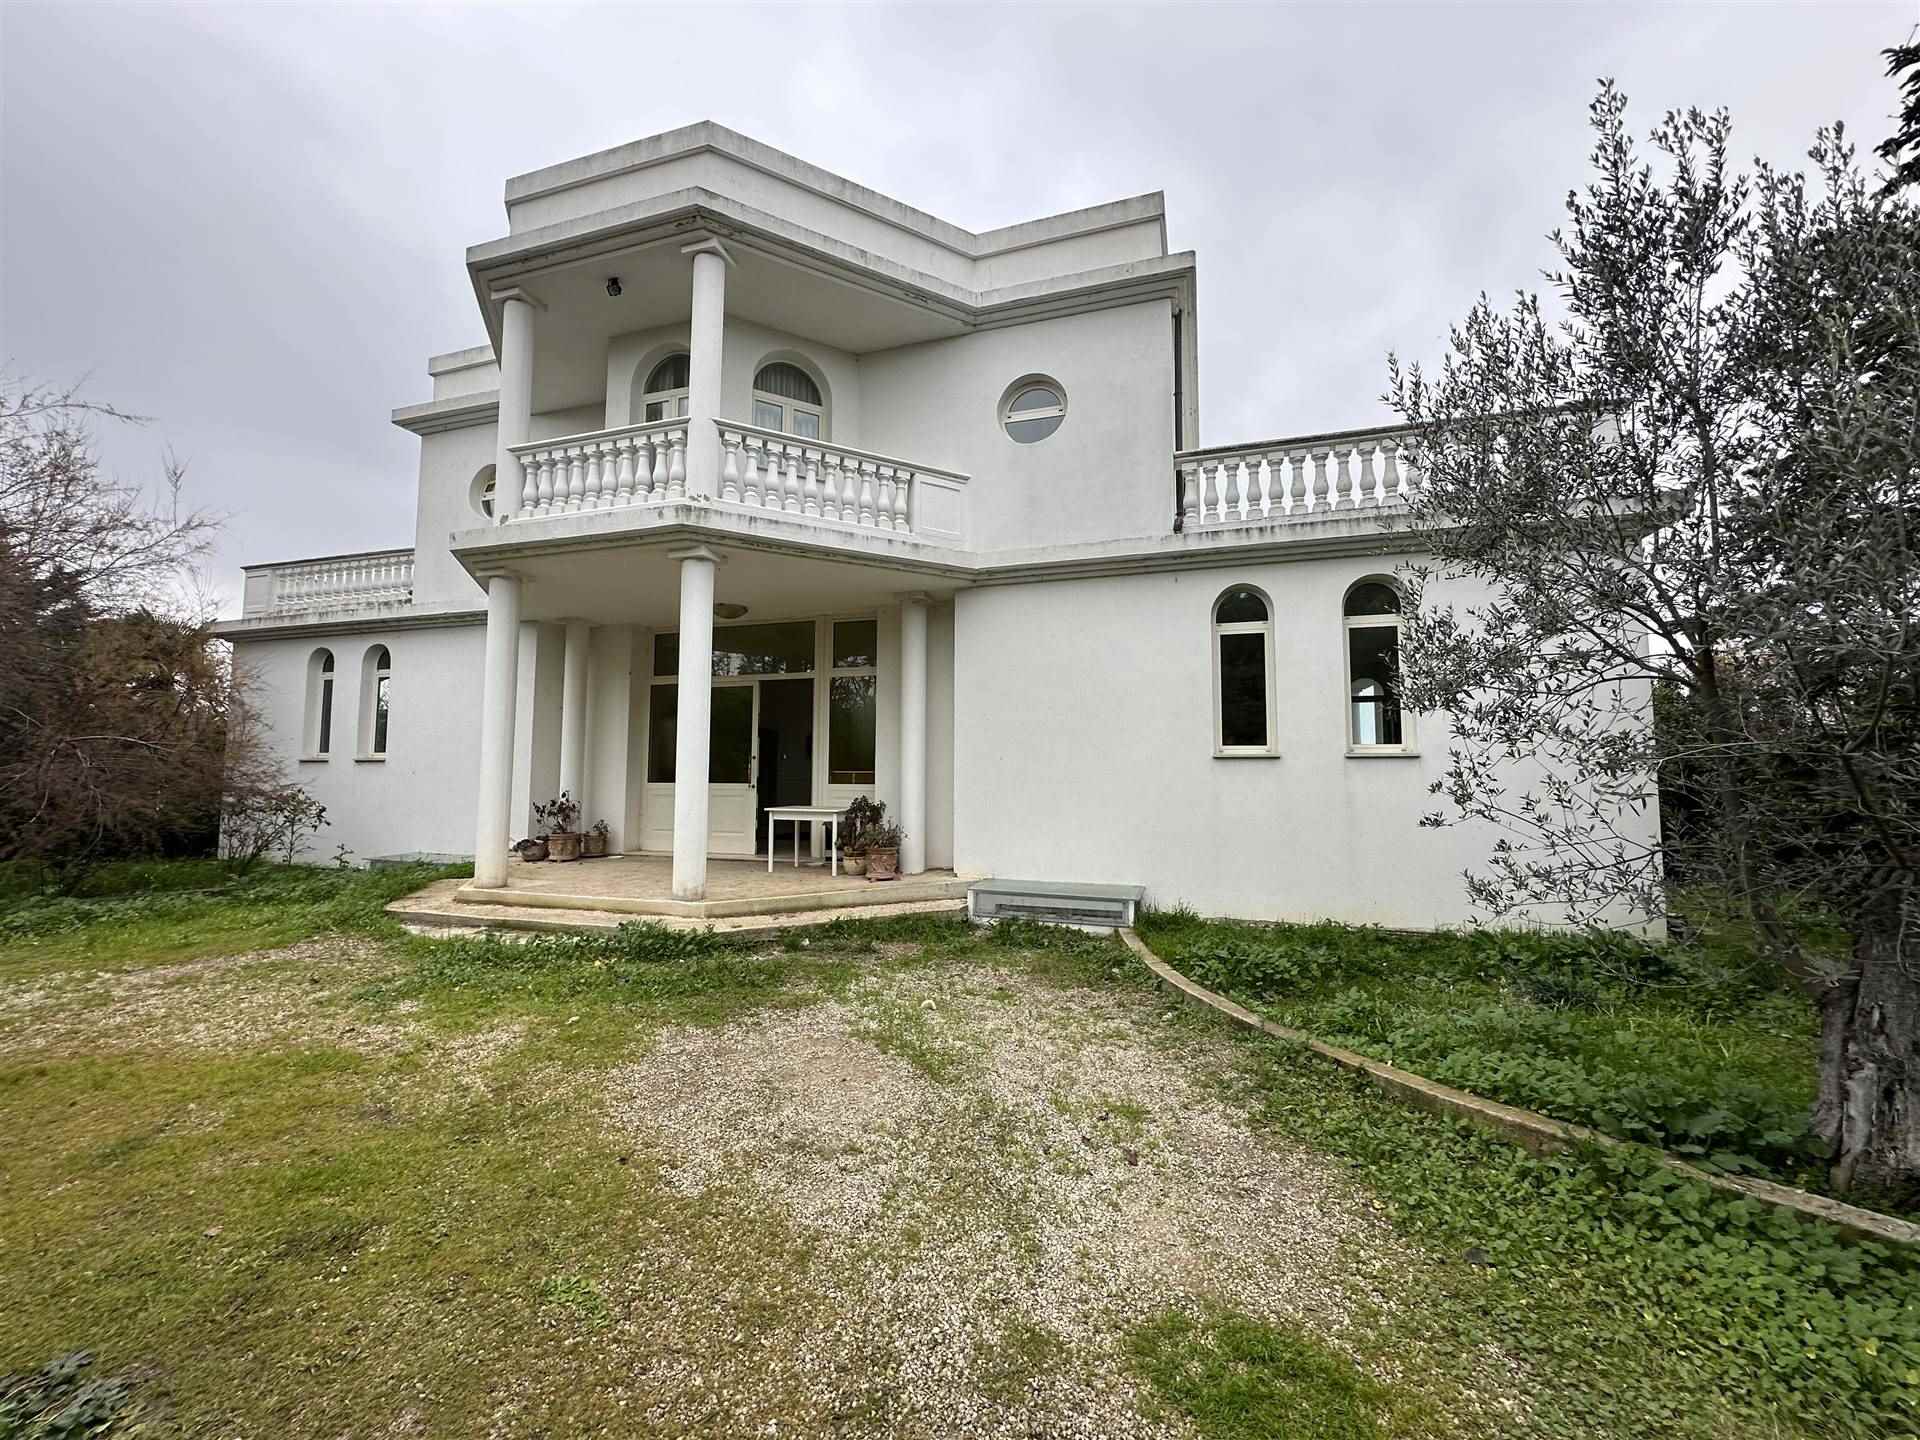 V - 450 L'agenzia immobiliare Aliservice propone in vendita a Vasto, in zona sant'Onofrio, una villa su tre livelli di complessivi mq. 600 con 